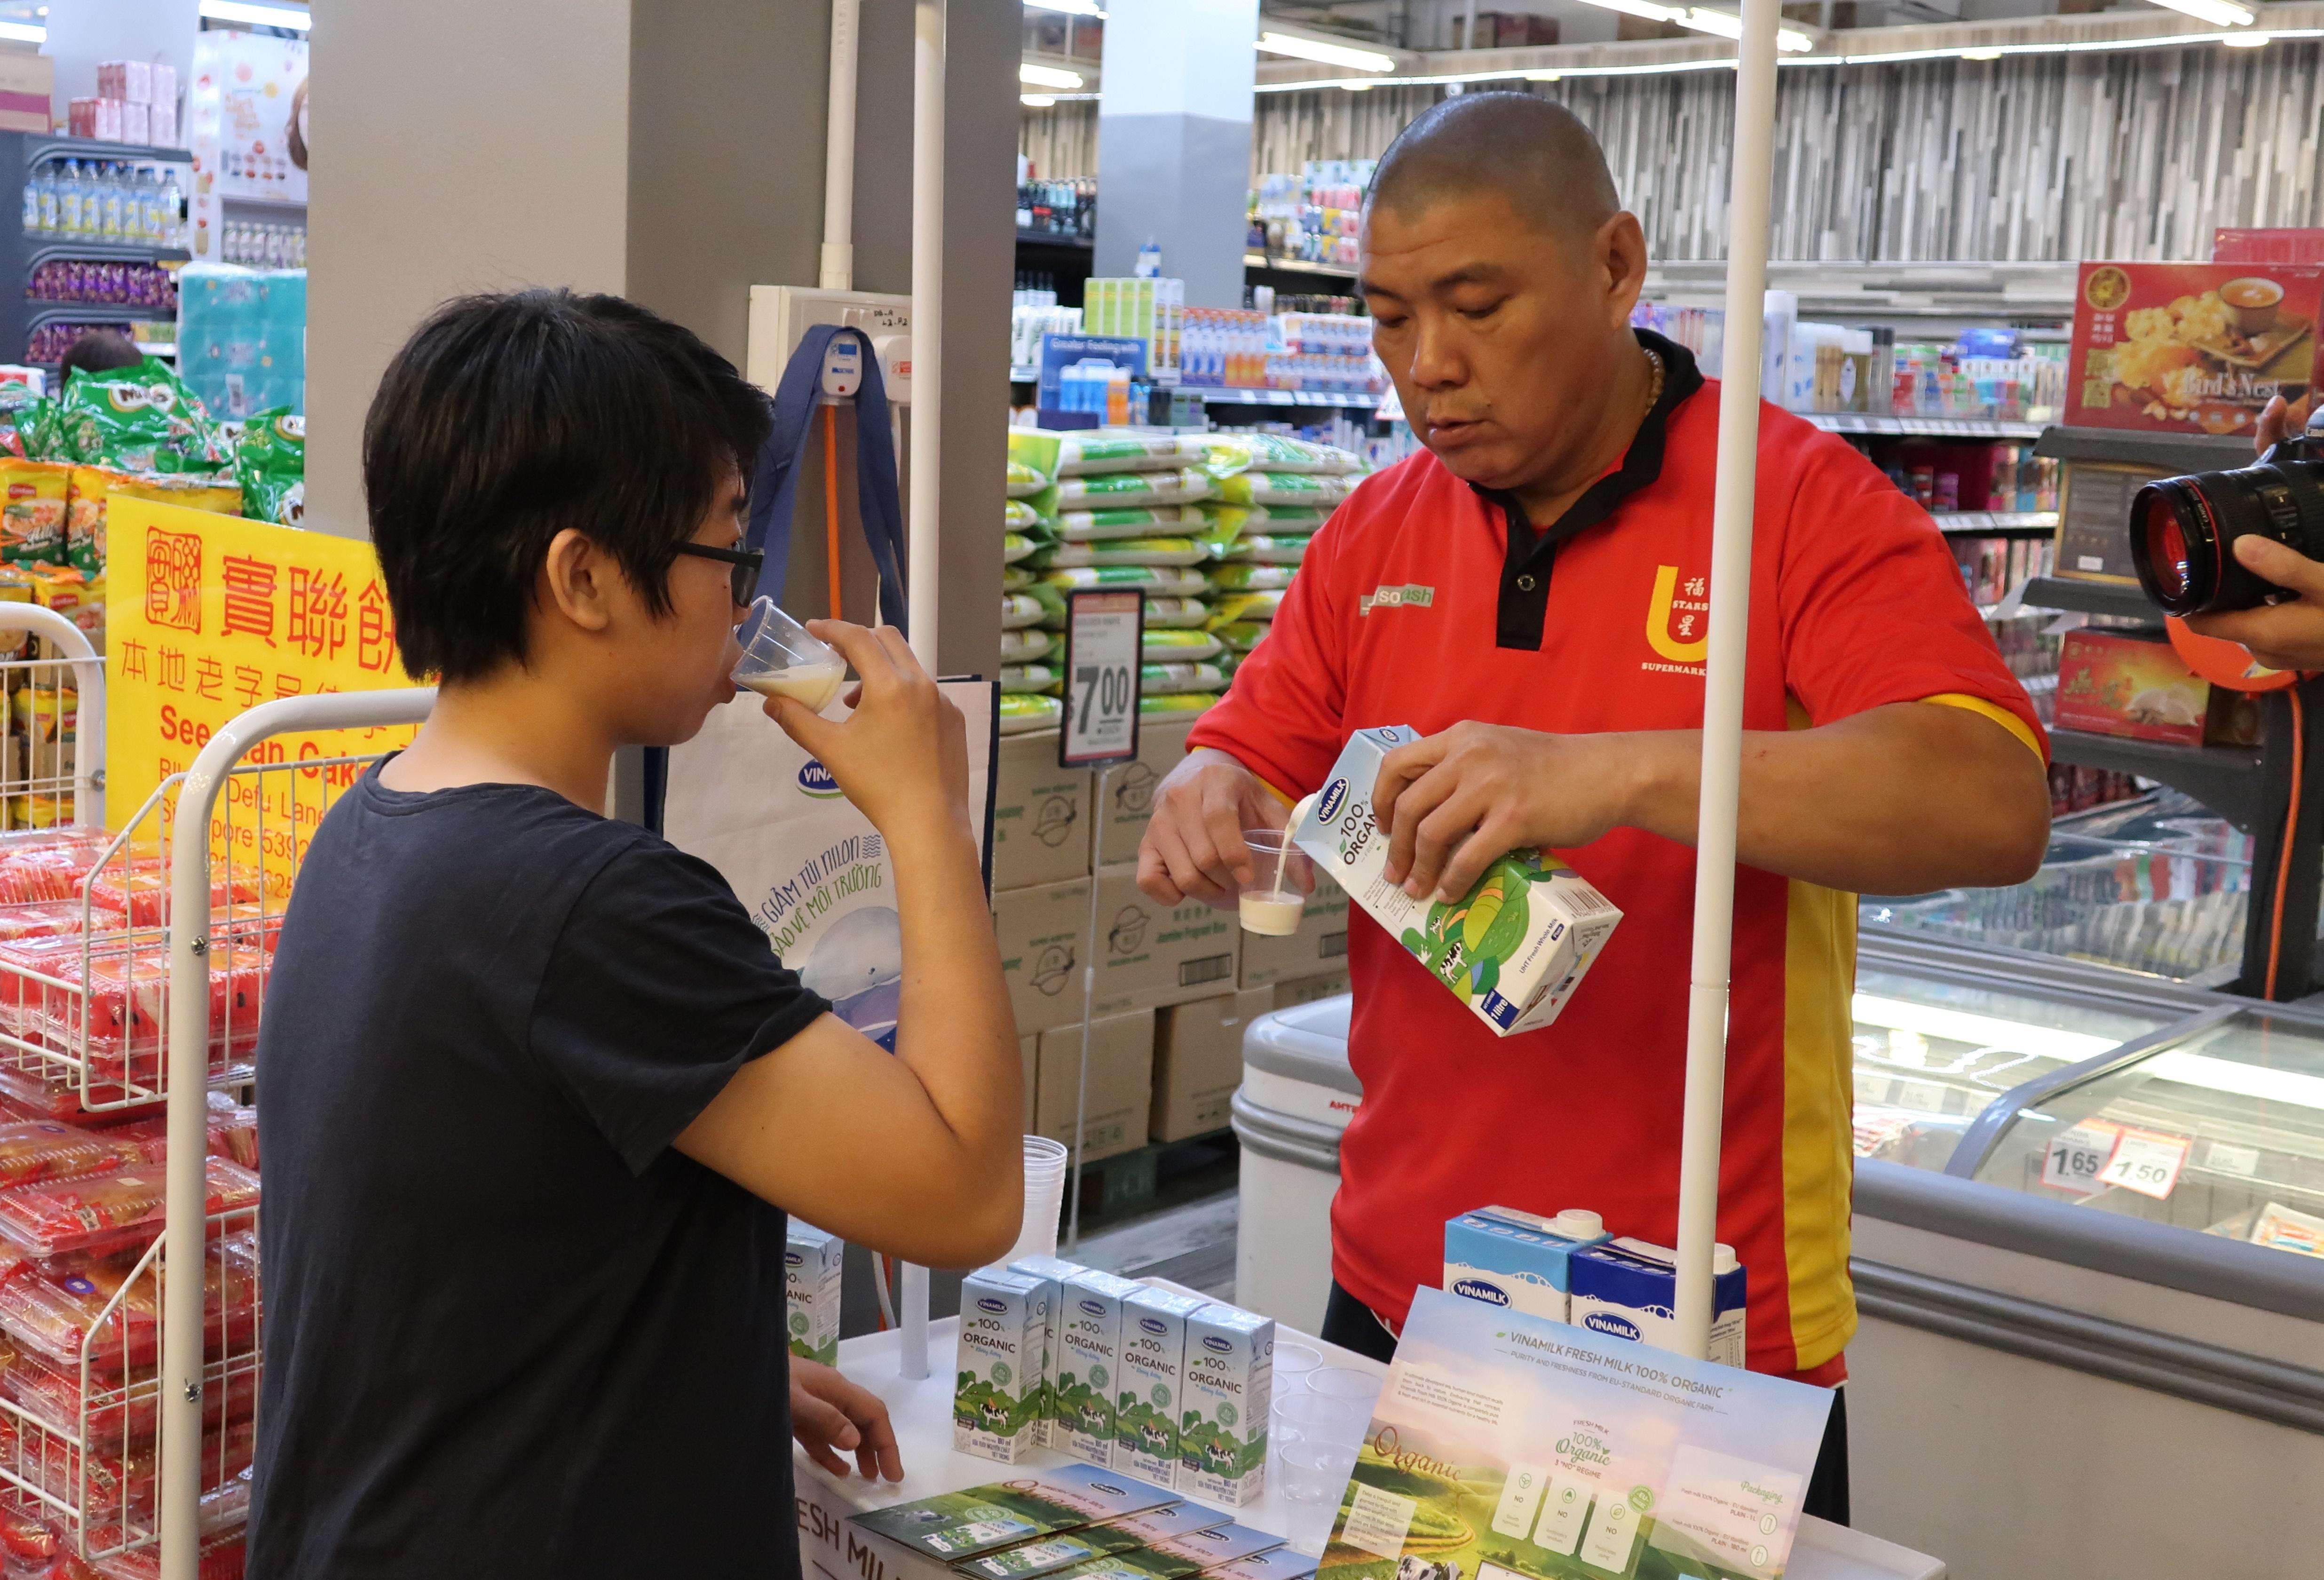  Người tiêu dùng Singapore tìm hiểu về sữa tươi Organic tại quầy dùng thử sản phẩm sữa Vinamilk trong các siêu thị